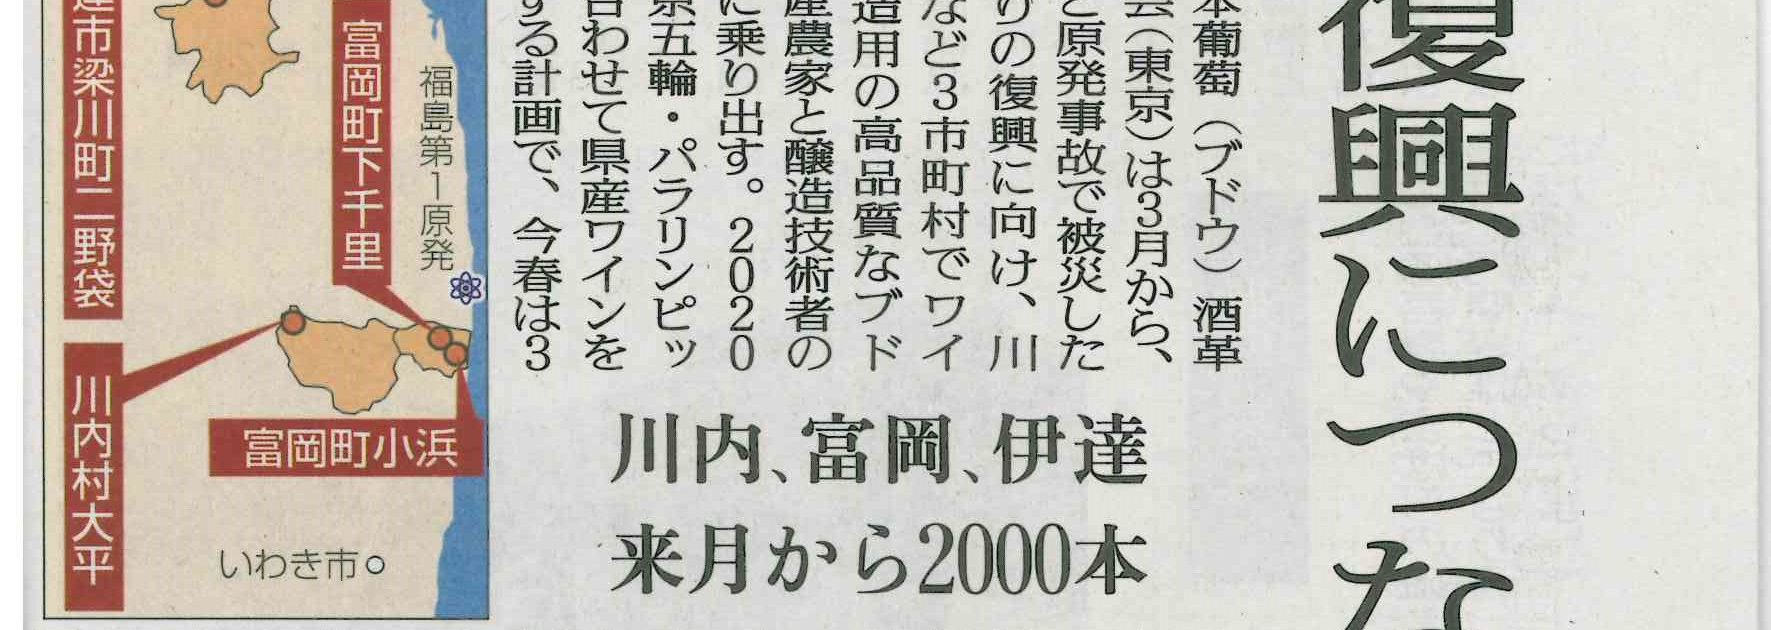 2016年2月24日_福島民友朝刊_復興につなぐブドウ栽培の画像